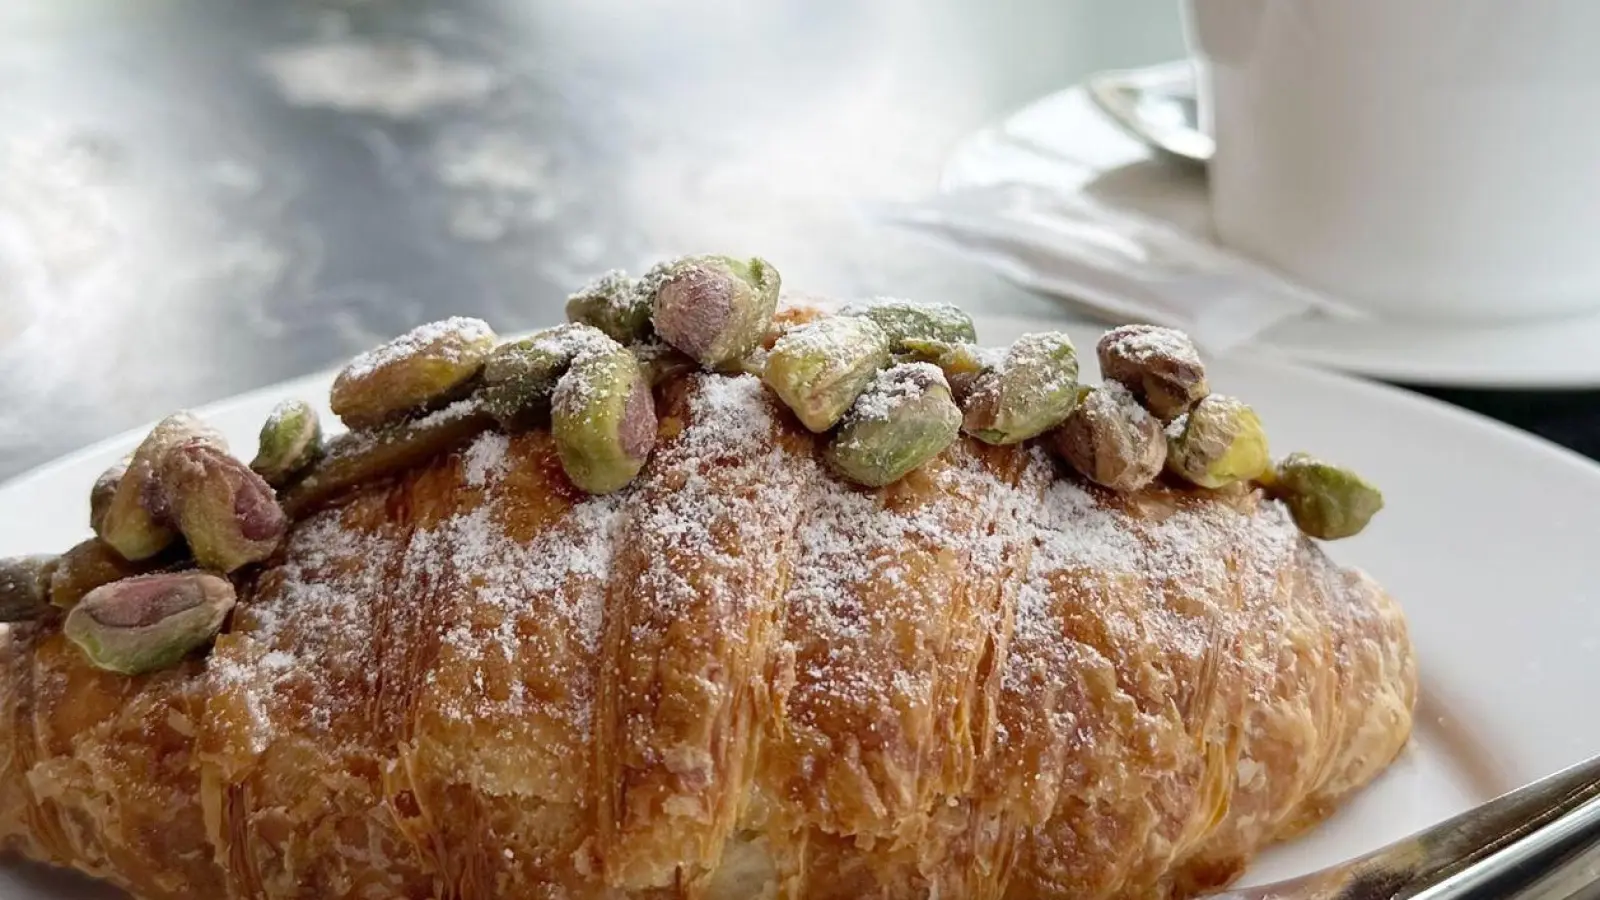 Lecker: Pistazien erfreuen sich in vielerlei Form großer Beliebtheit, wie hier Croissant-Füllung und -Belag. (Foto: Gregor Tholl/dpa)